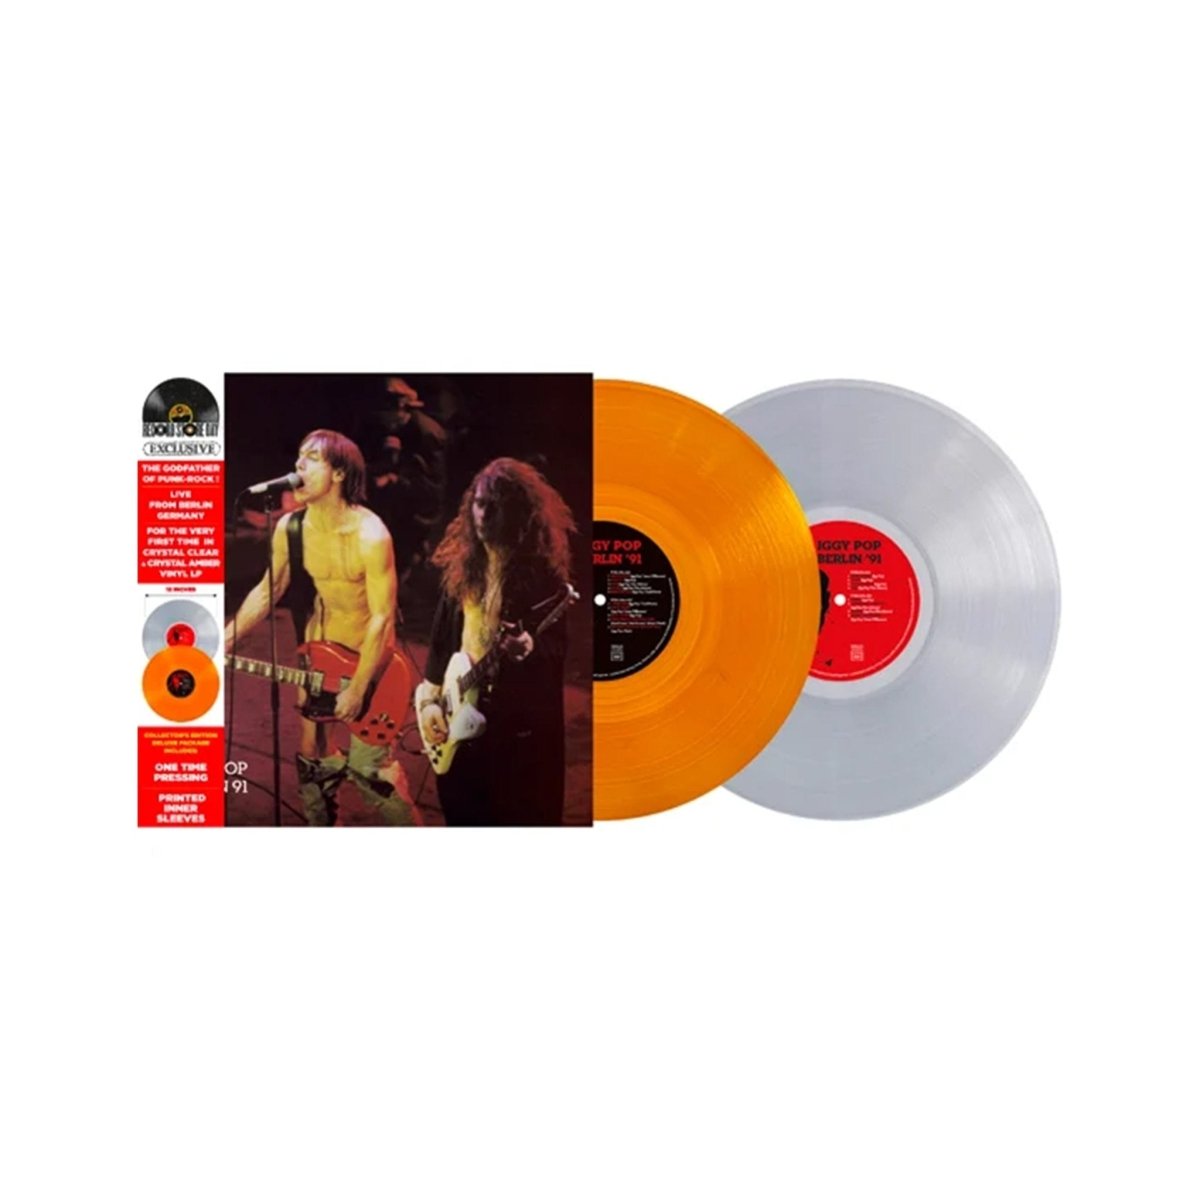 Iggy Pop - Berlin 91 Records & LPs Vinyl